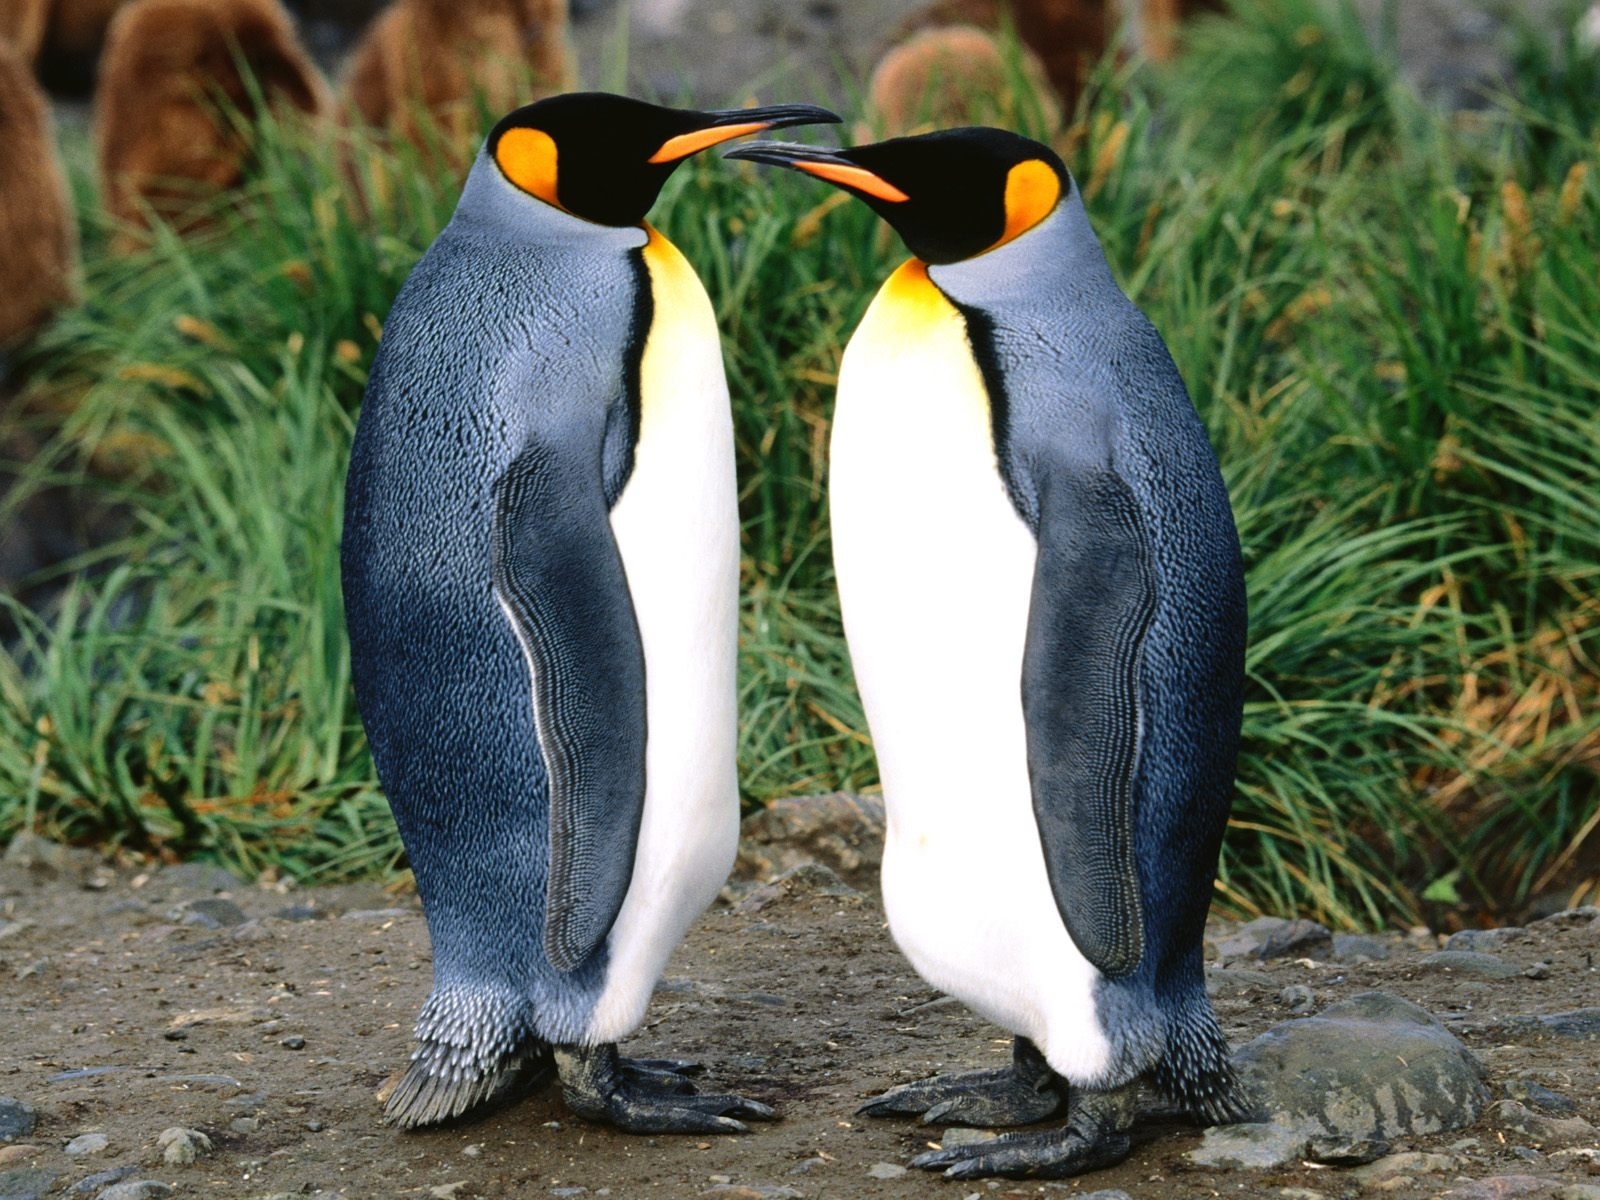 Скачать обои бесплатно Животные, Пингвины картинка на рабочий стол ПК